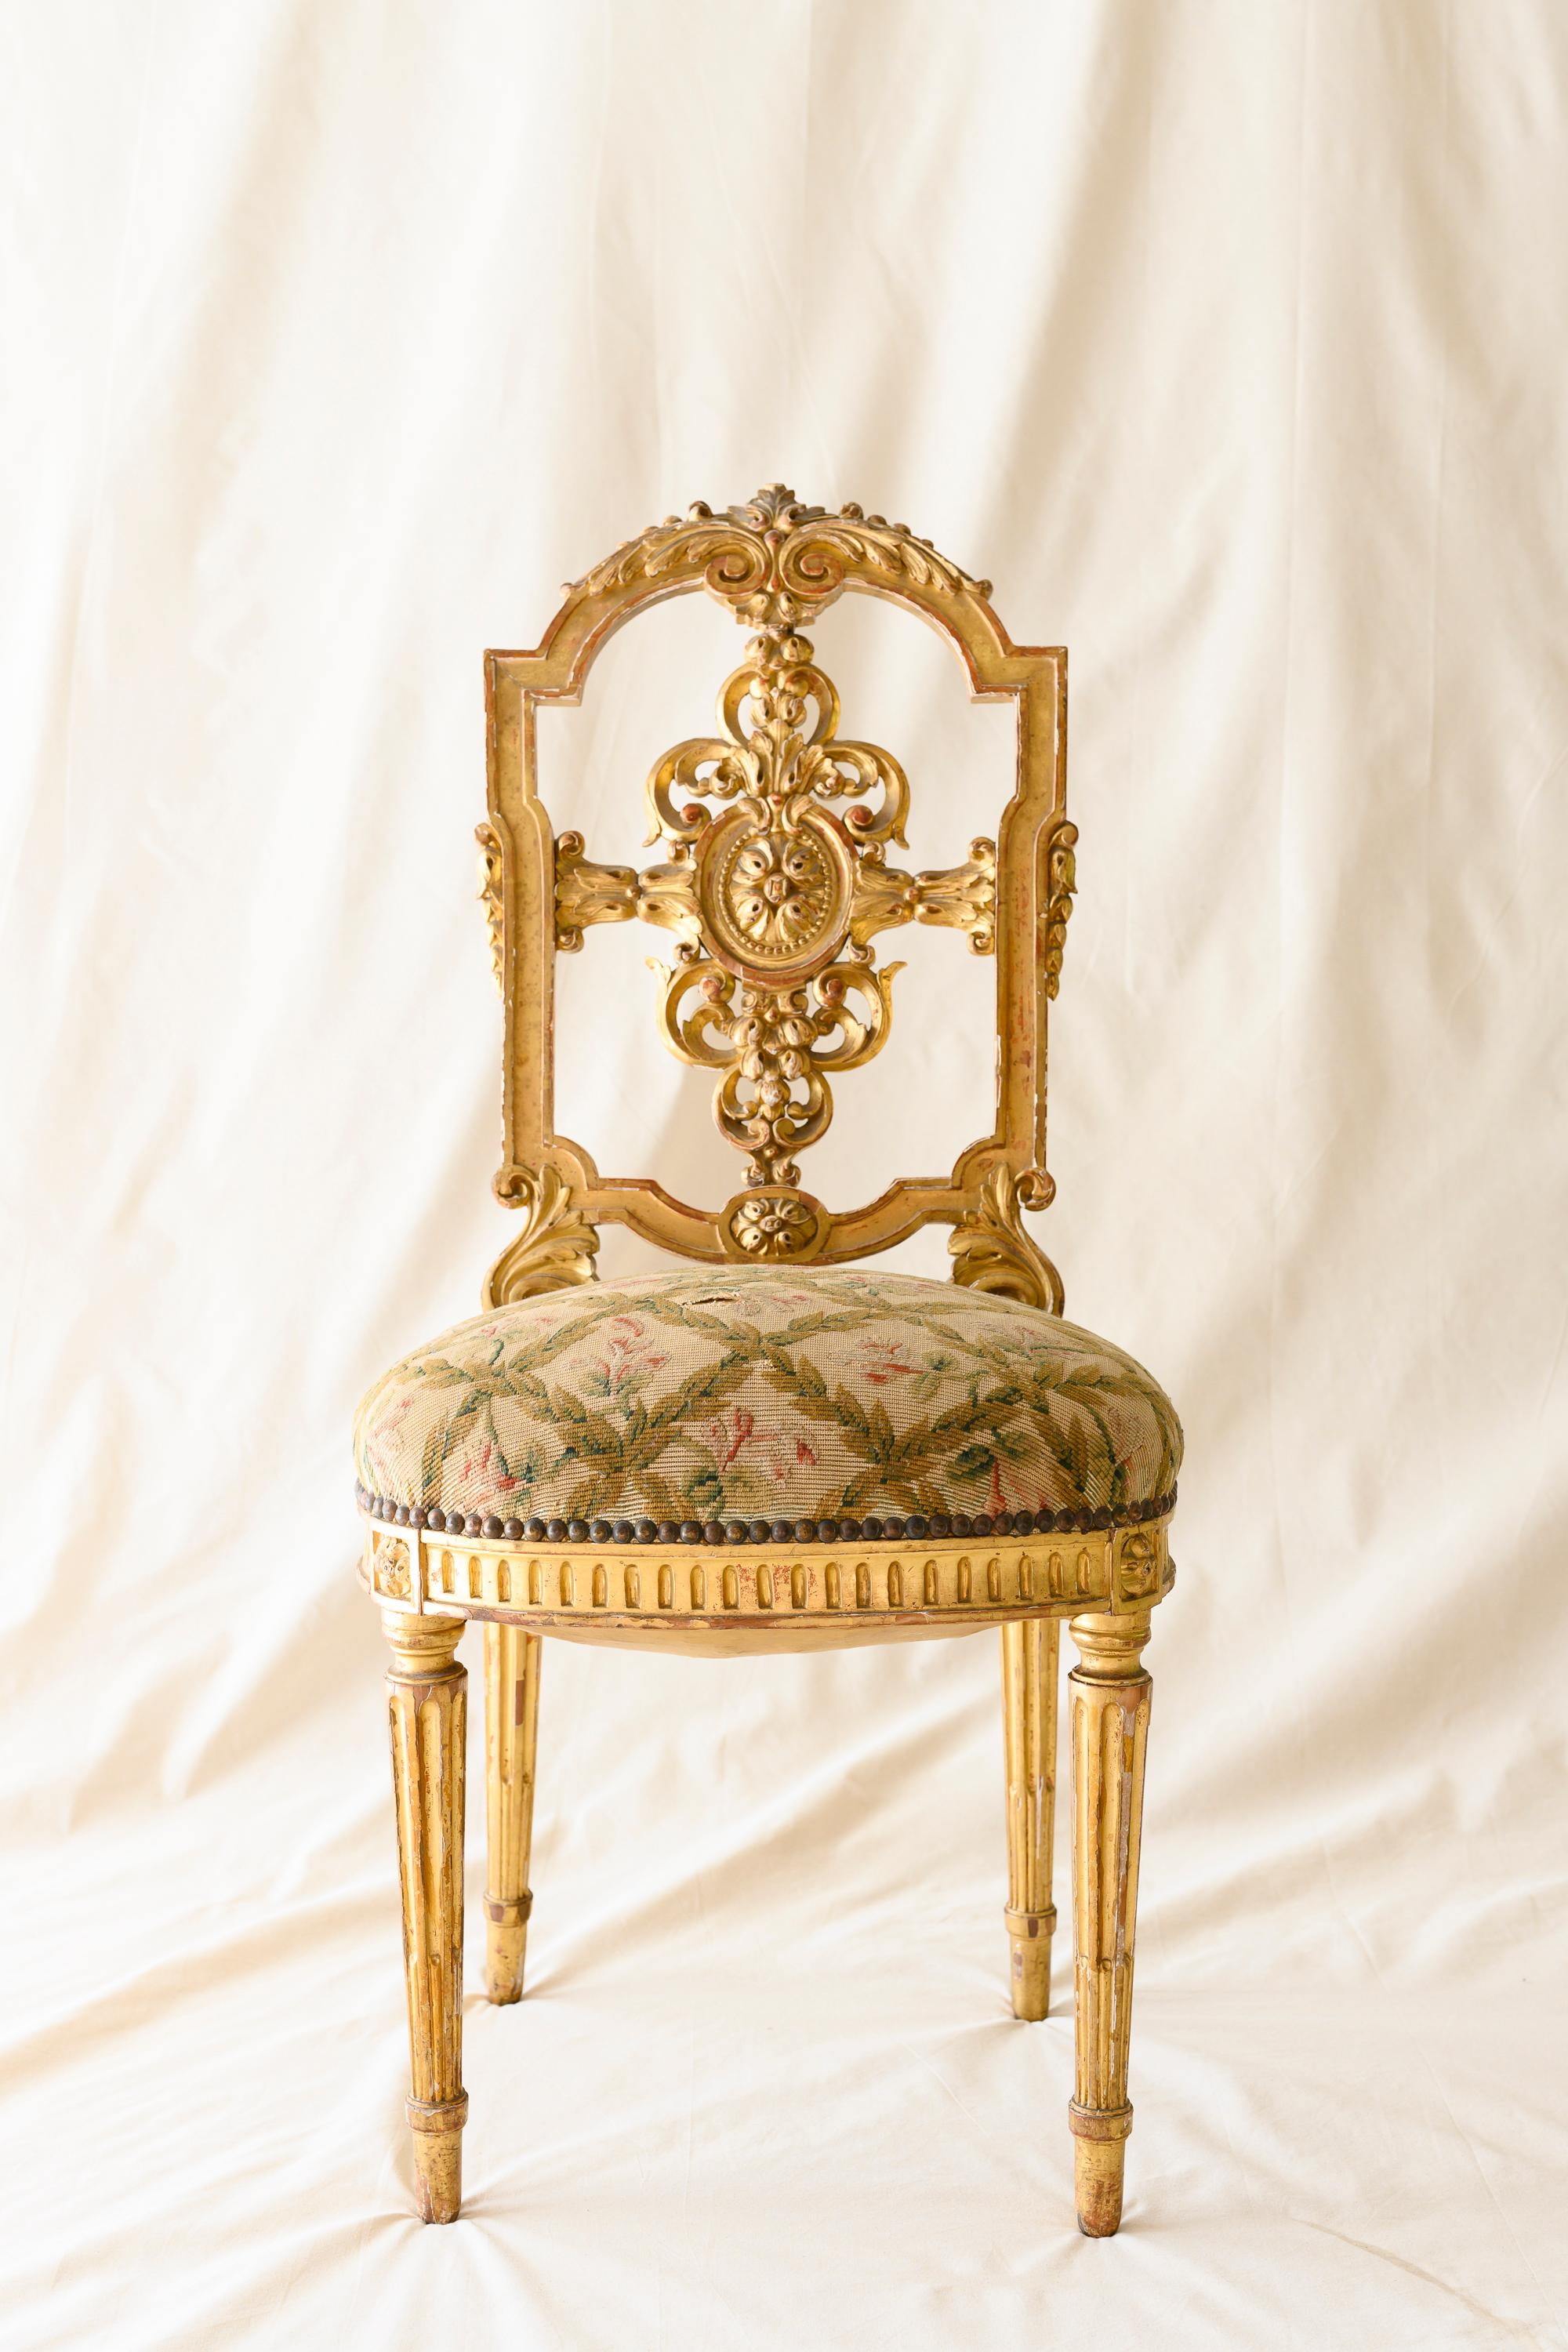 Suite de quatre chaises Louis XVI en bois doré dans le style de Versailles. Chacune d'entre elles présente un dosseret délicatement sculpté d'un médaillon en forme de rosette entouré d'un feuillage complexe sur un dossier en forme de bouclier, avec